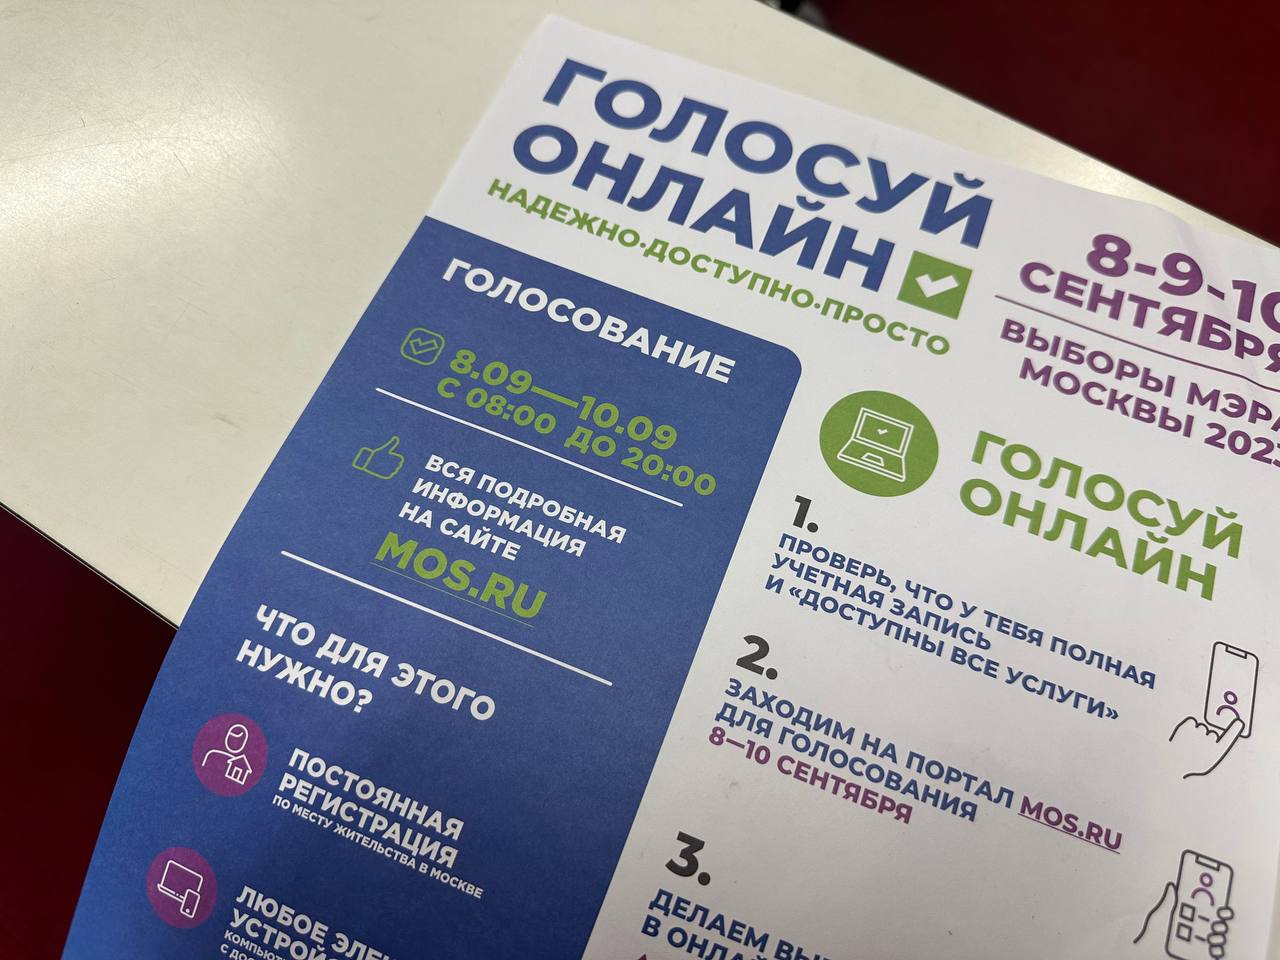 Тестовое голосование перед выборами пройдет в Москве 25 августа